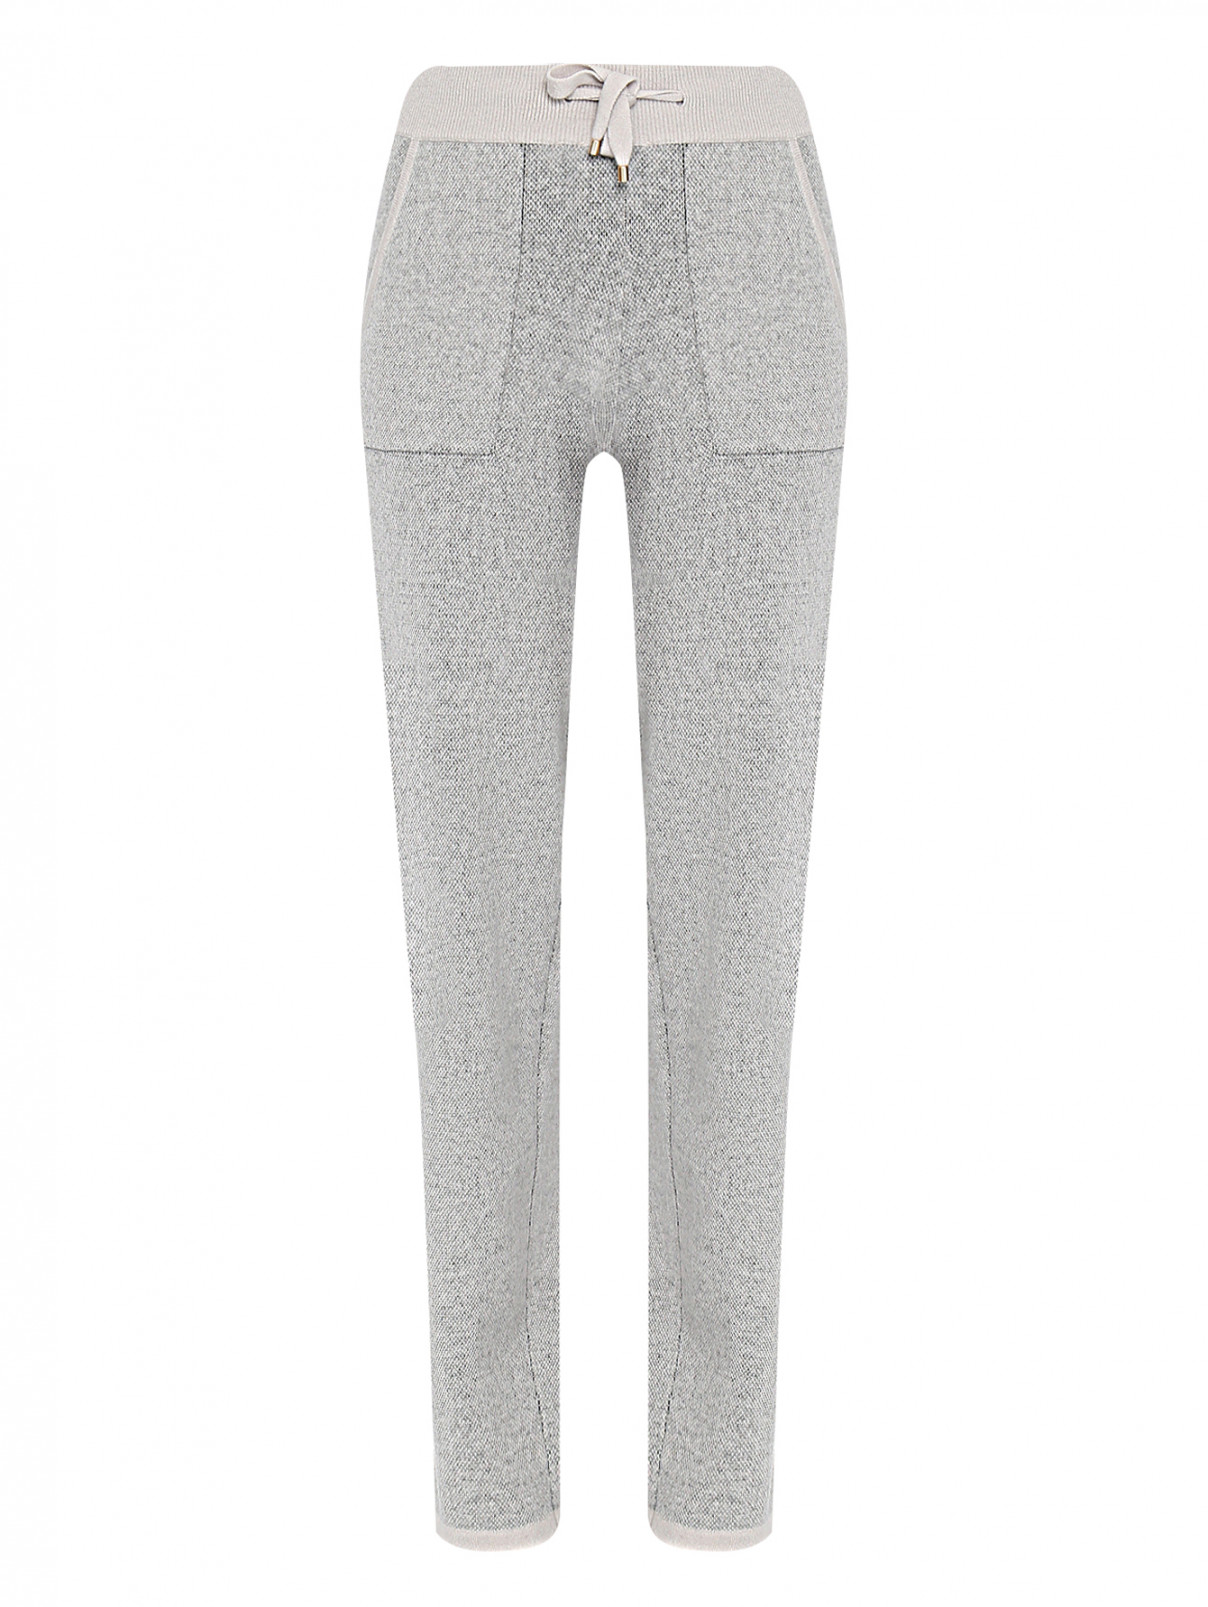 Трикотажные брюки из кашемира с карманами Lorena Antoniazzi  –  Общий вид  – Цвет:  Серый